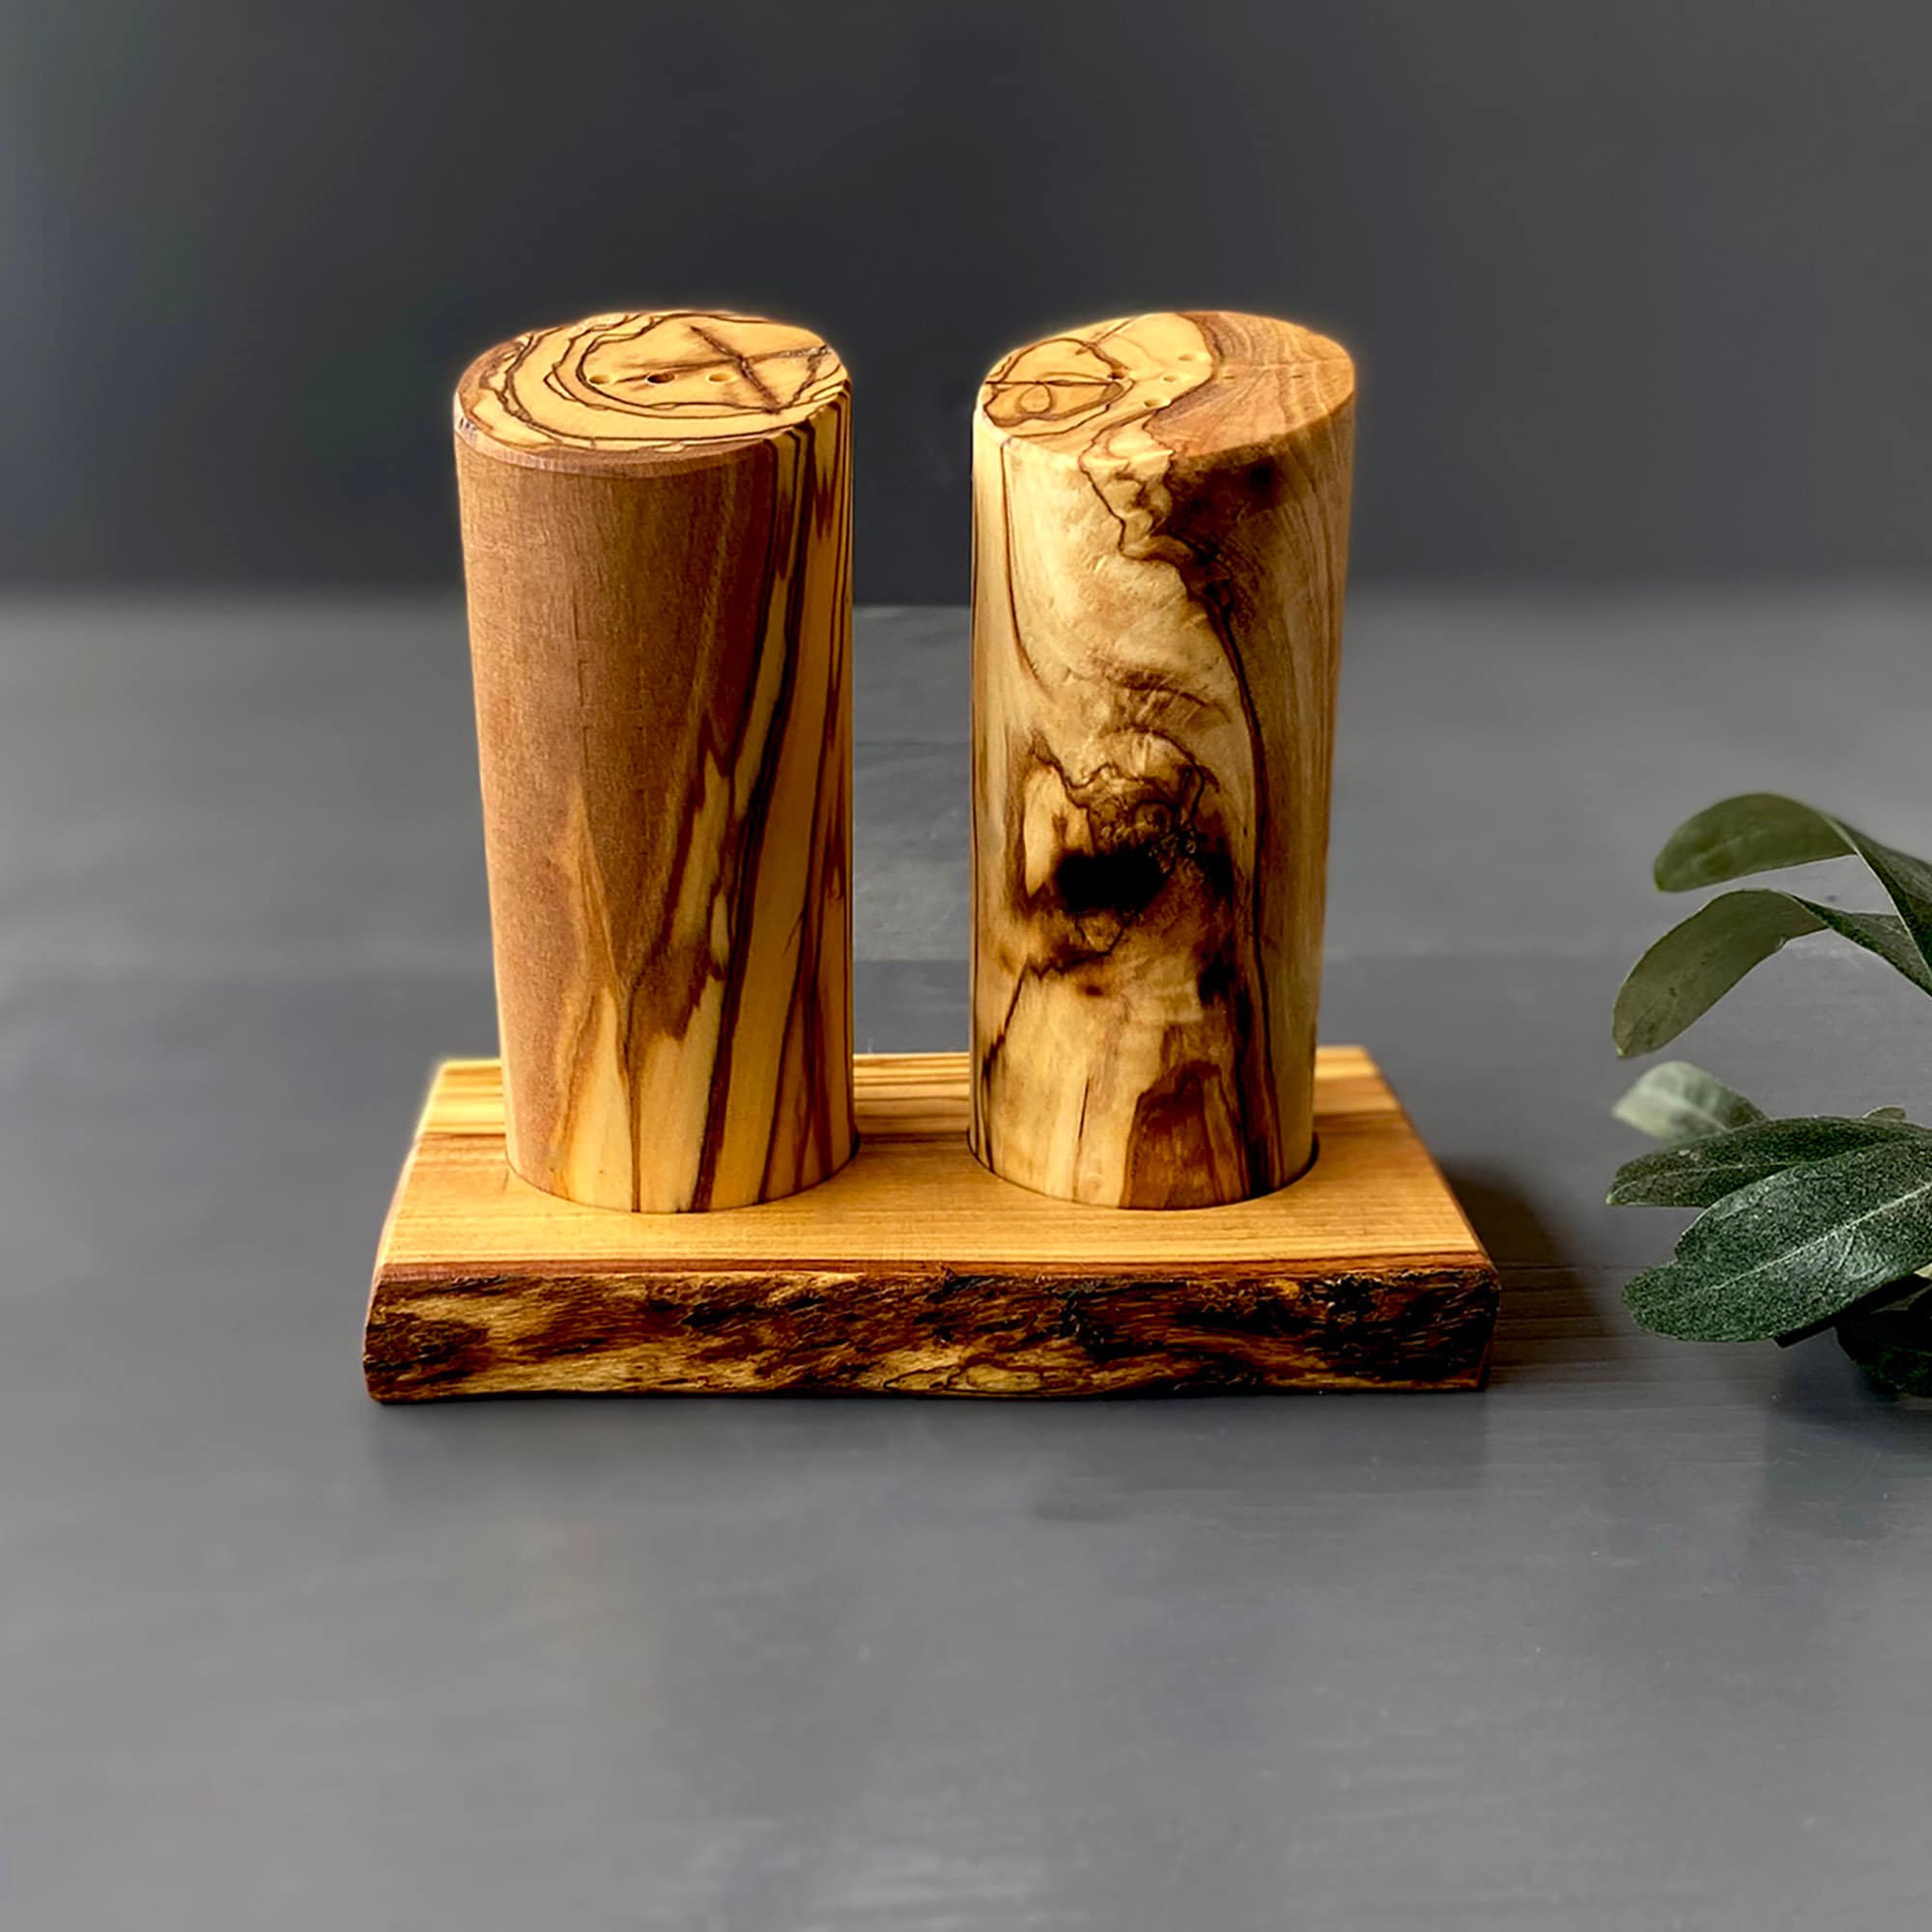 Salière et poivrière de table - frêne/merisier/noyer - Tranche de bois